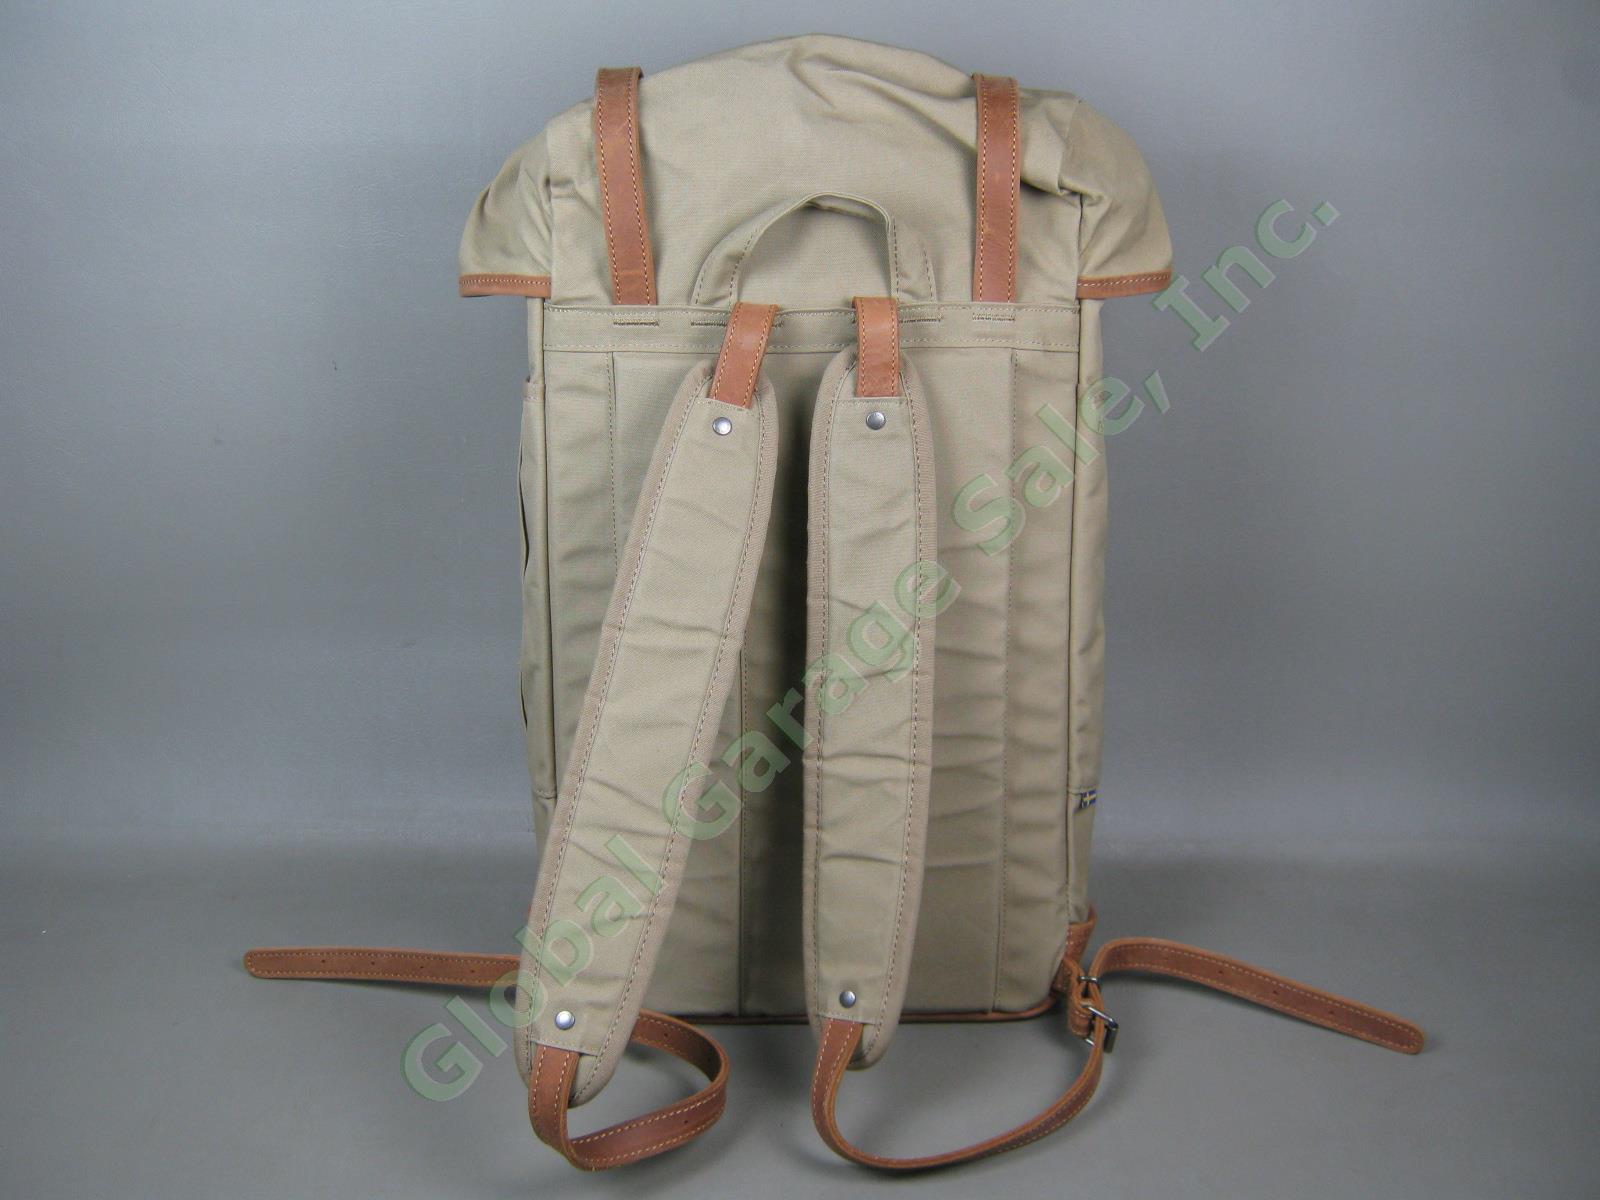 Fjallraven Rucksack No 21 Large Daypack Backpack 24206 Sand Color G-1000 VG COND 5